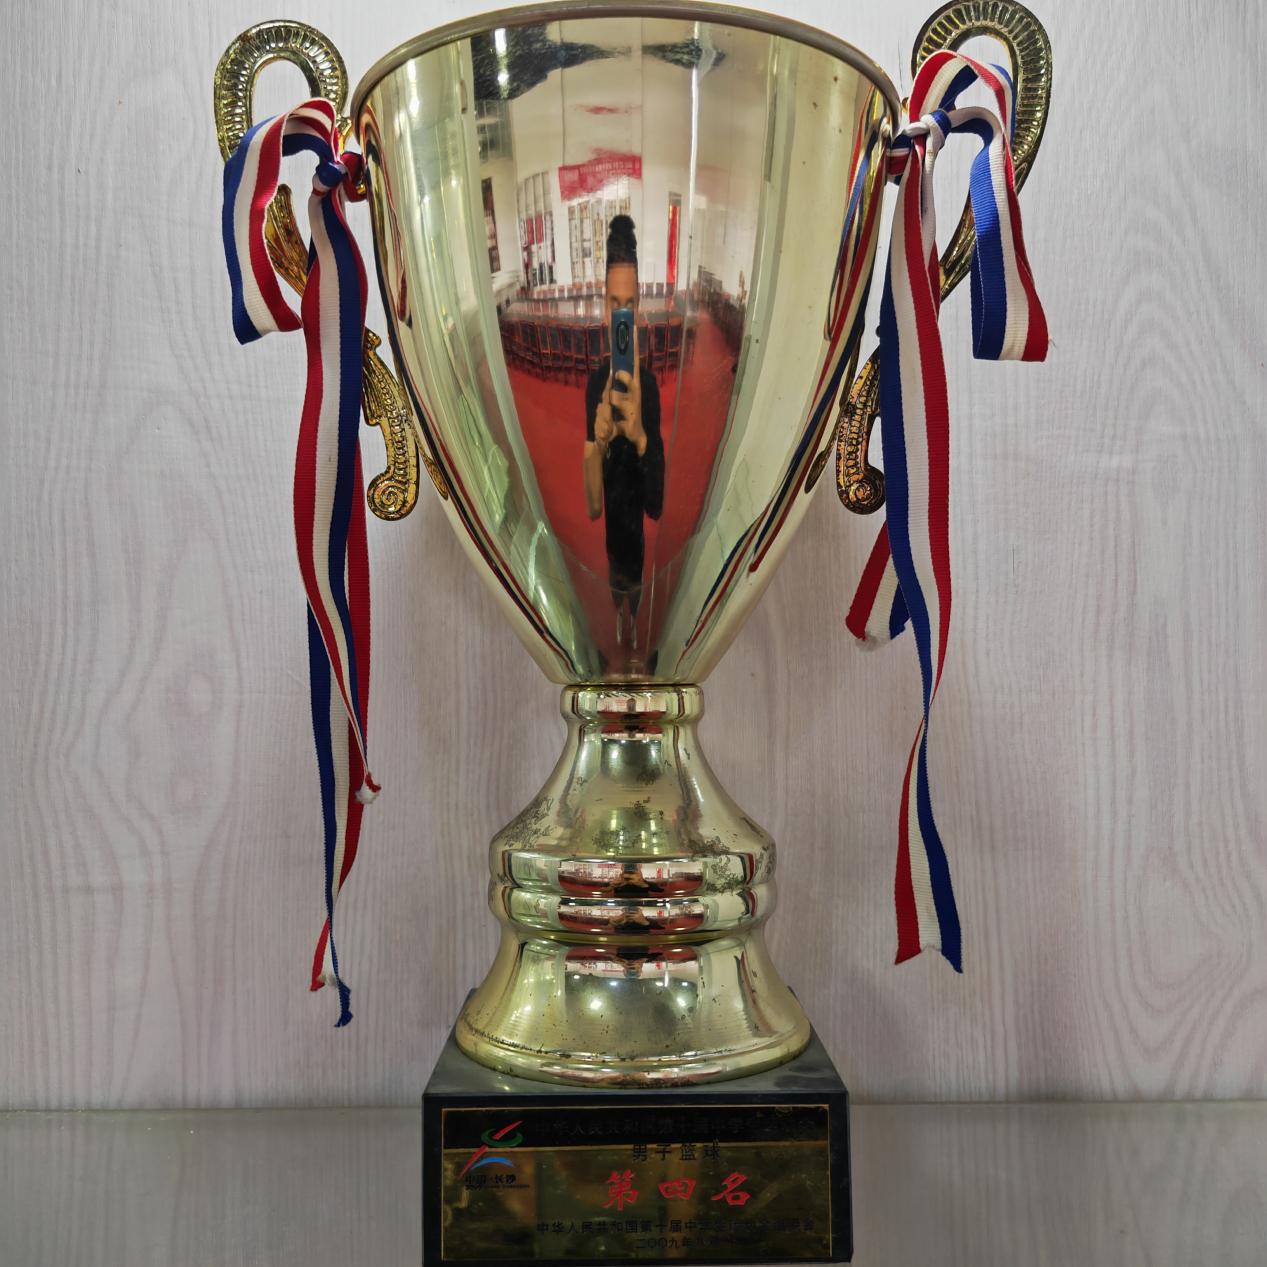 2009年中华人民共和国第十届学生运动会篮球比赛 第四